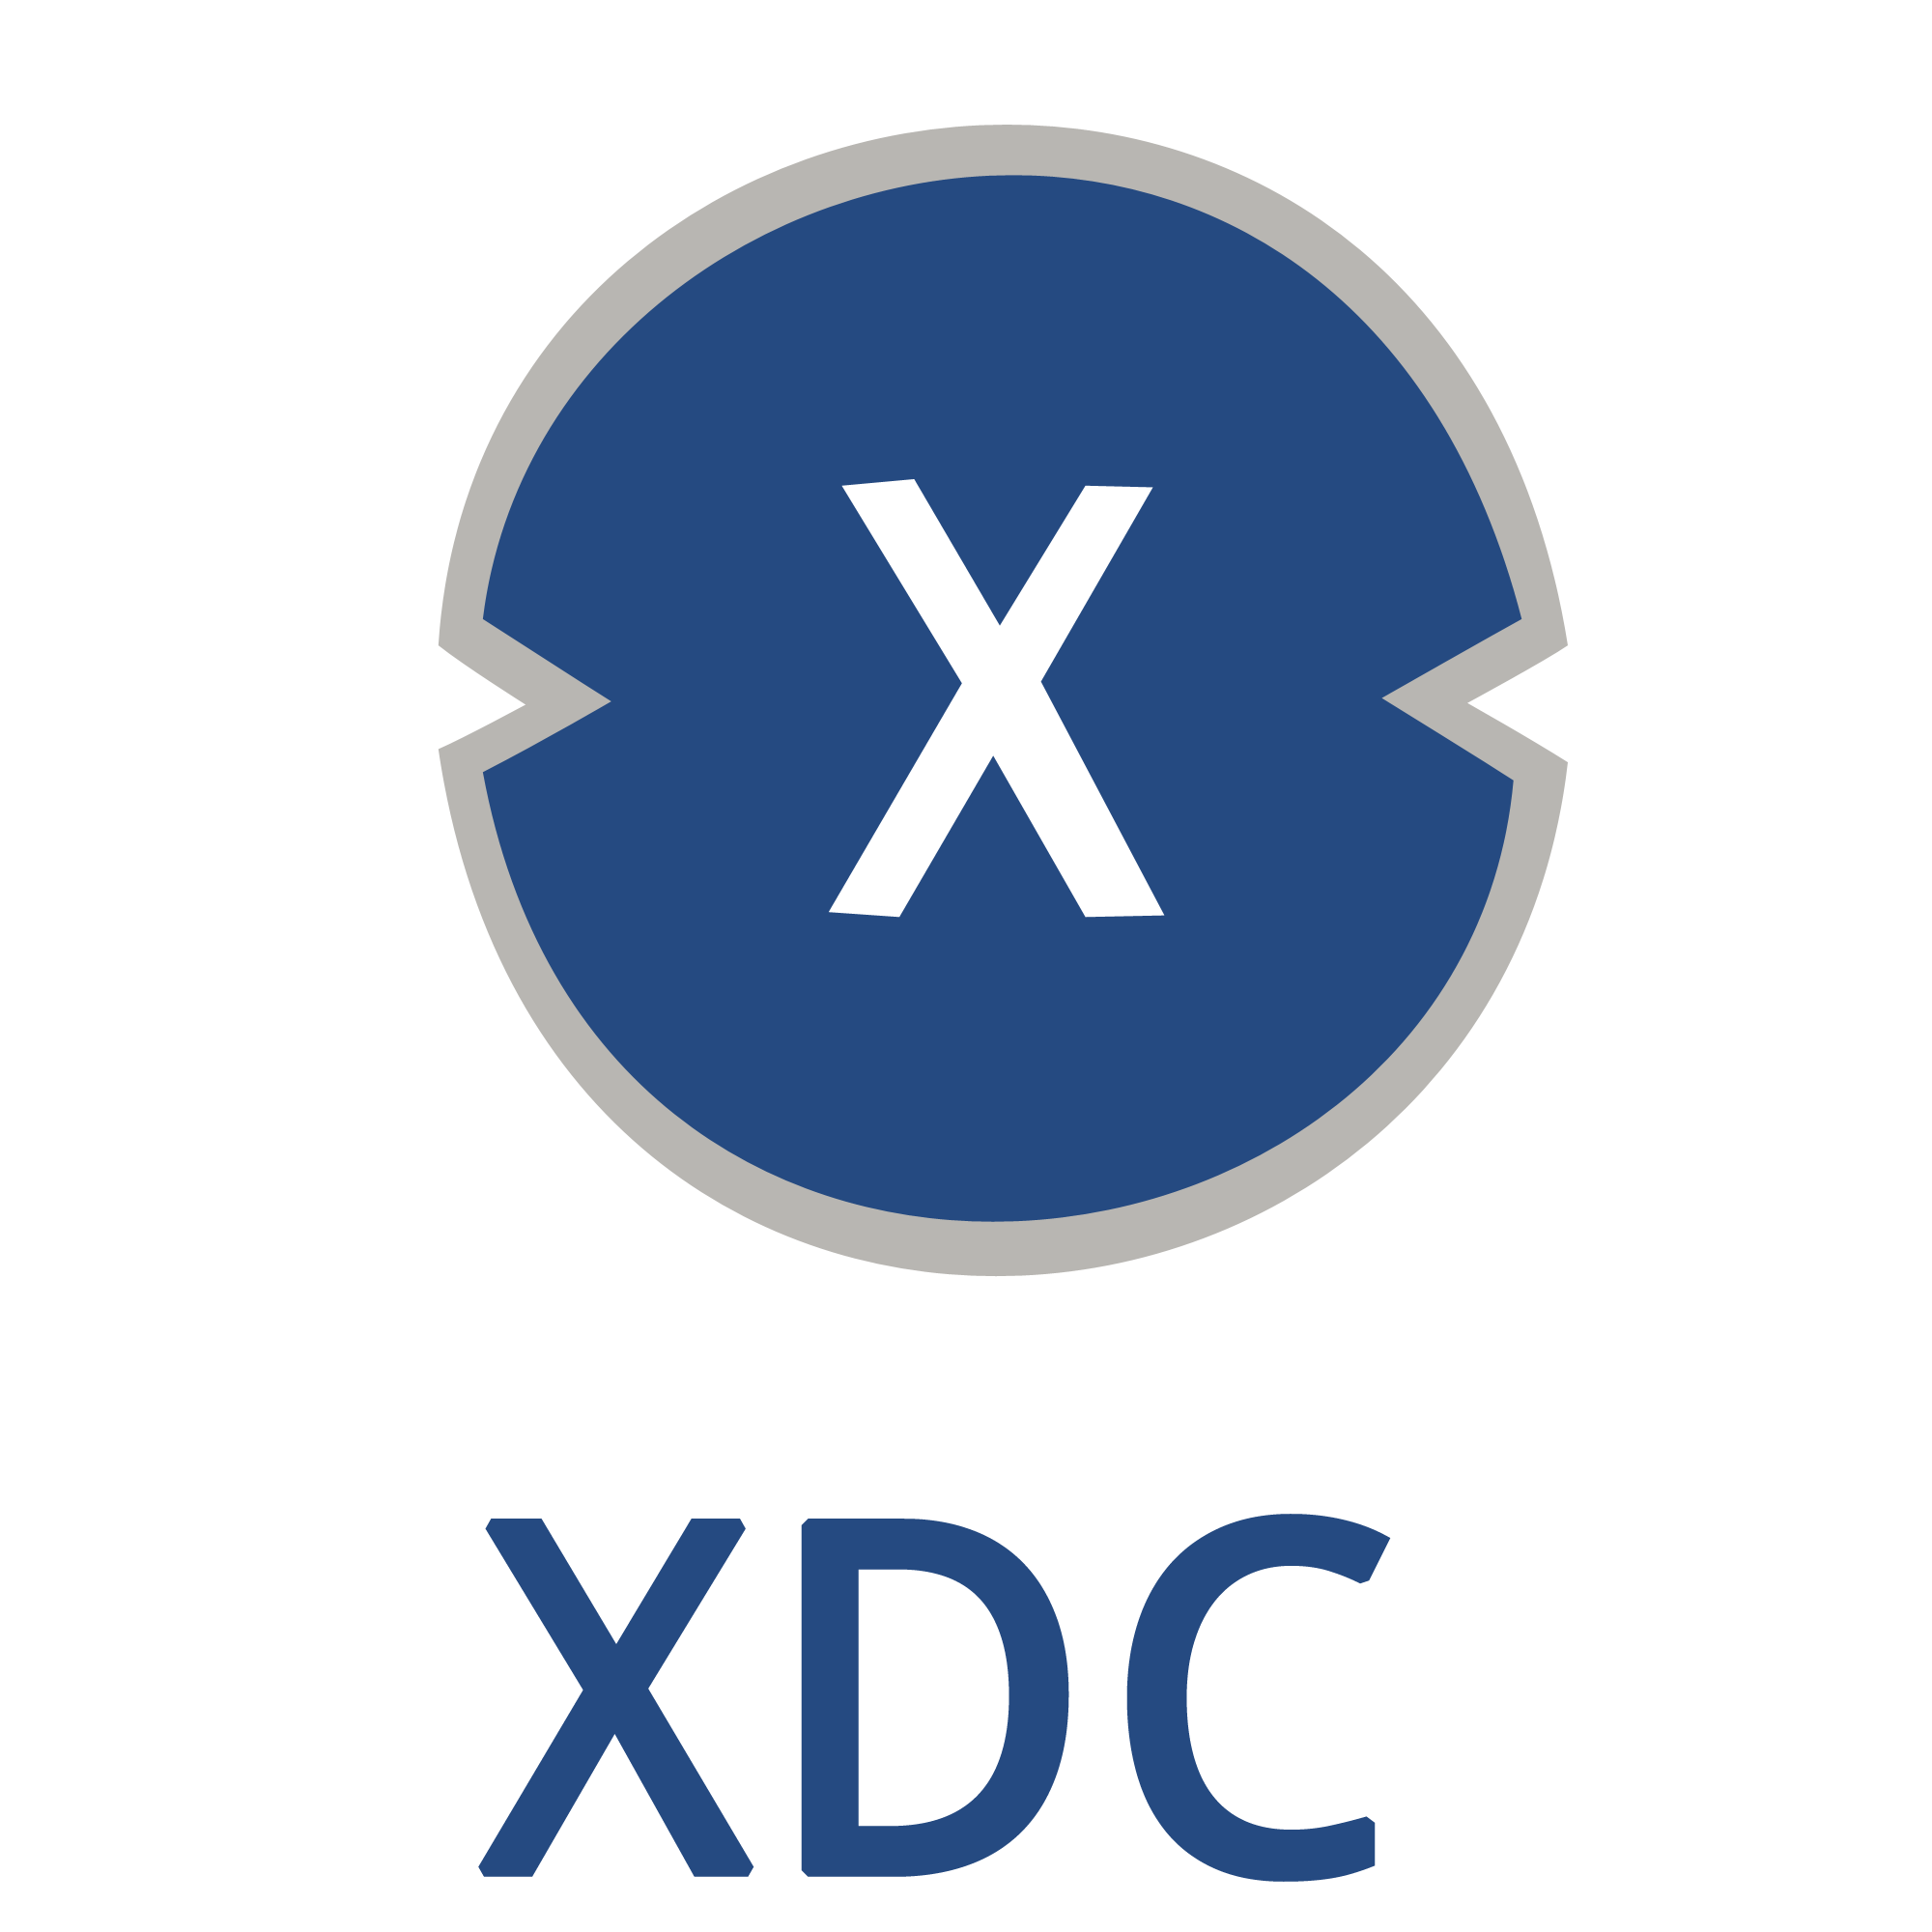 XDC Token